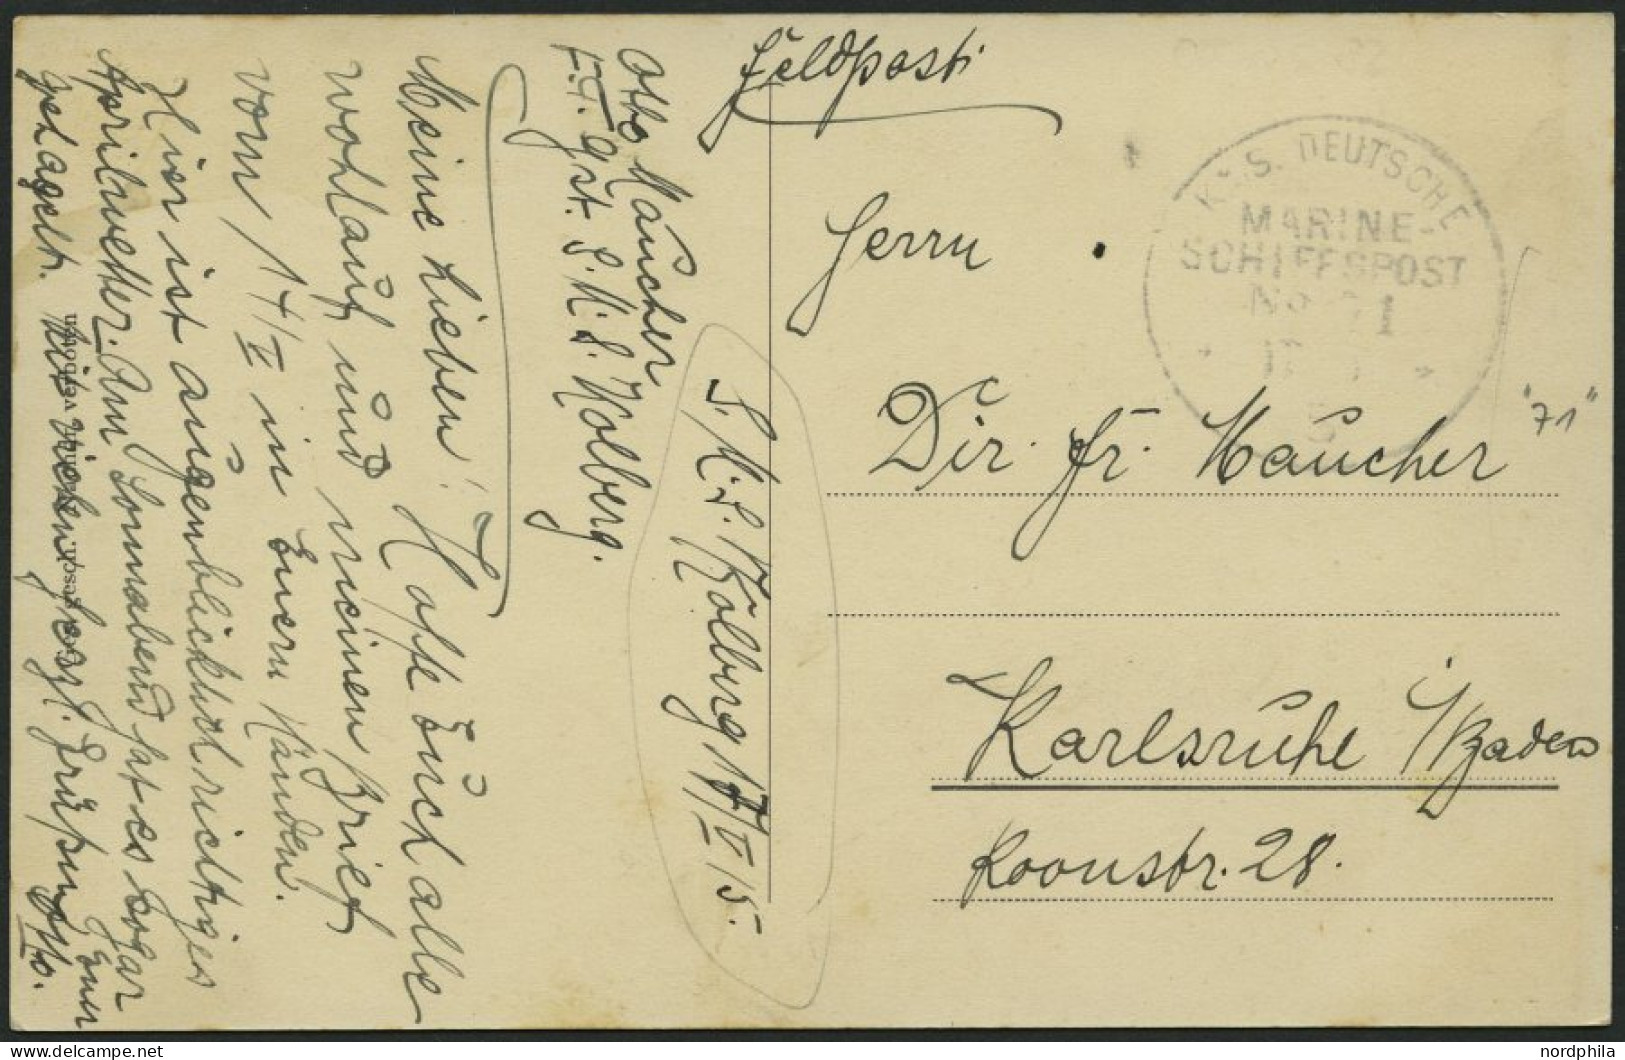 MSP VON 1914 - 1918 71 (Kleiner Kreuzer KOLBERG), 17.5.1915, Feldpost-Ansichtskarte (S.M.S. Emden) Von Bord Der Kolberg, - Maritiem